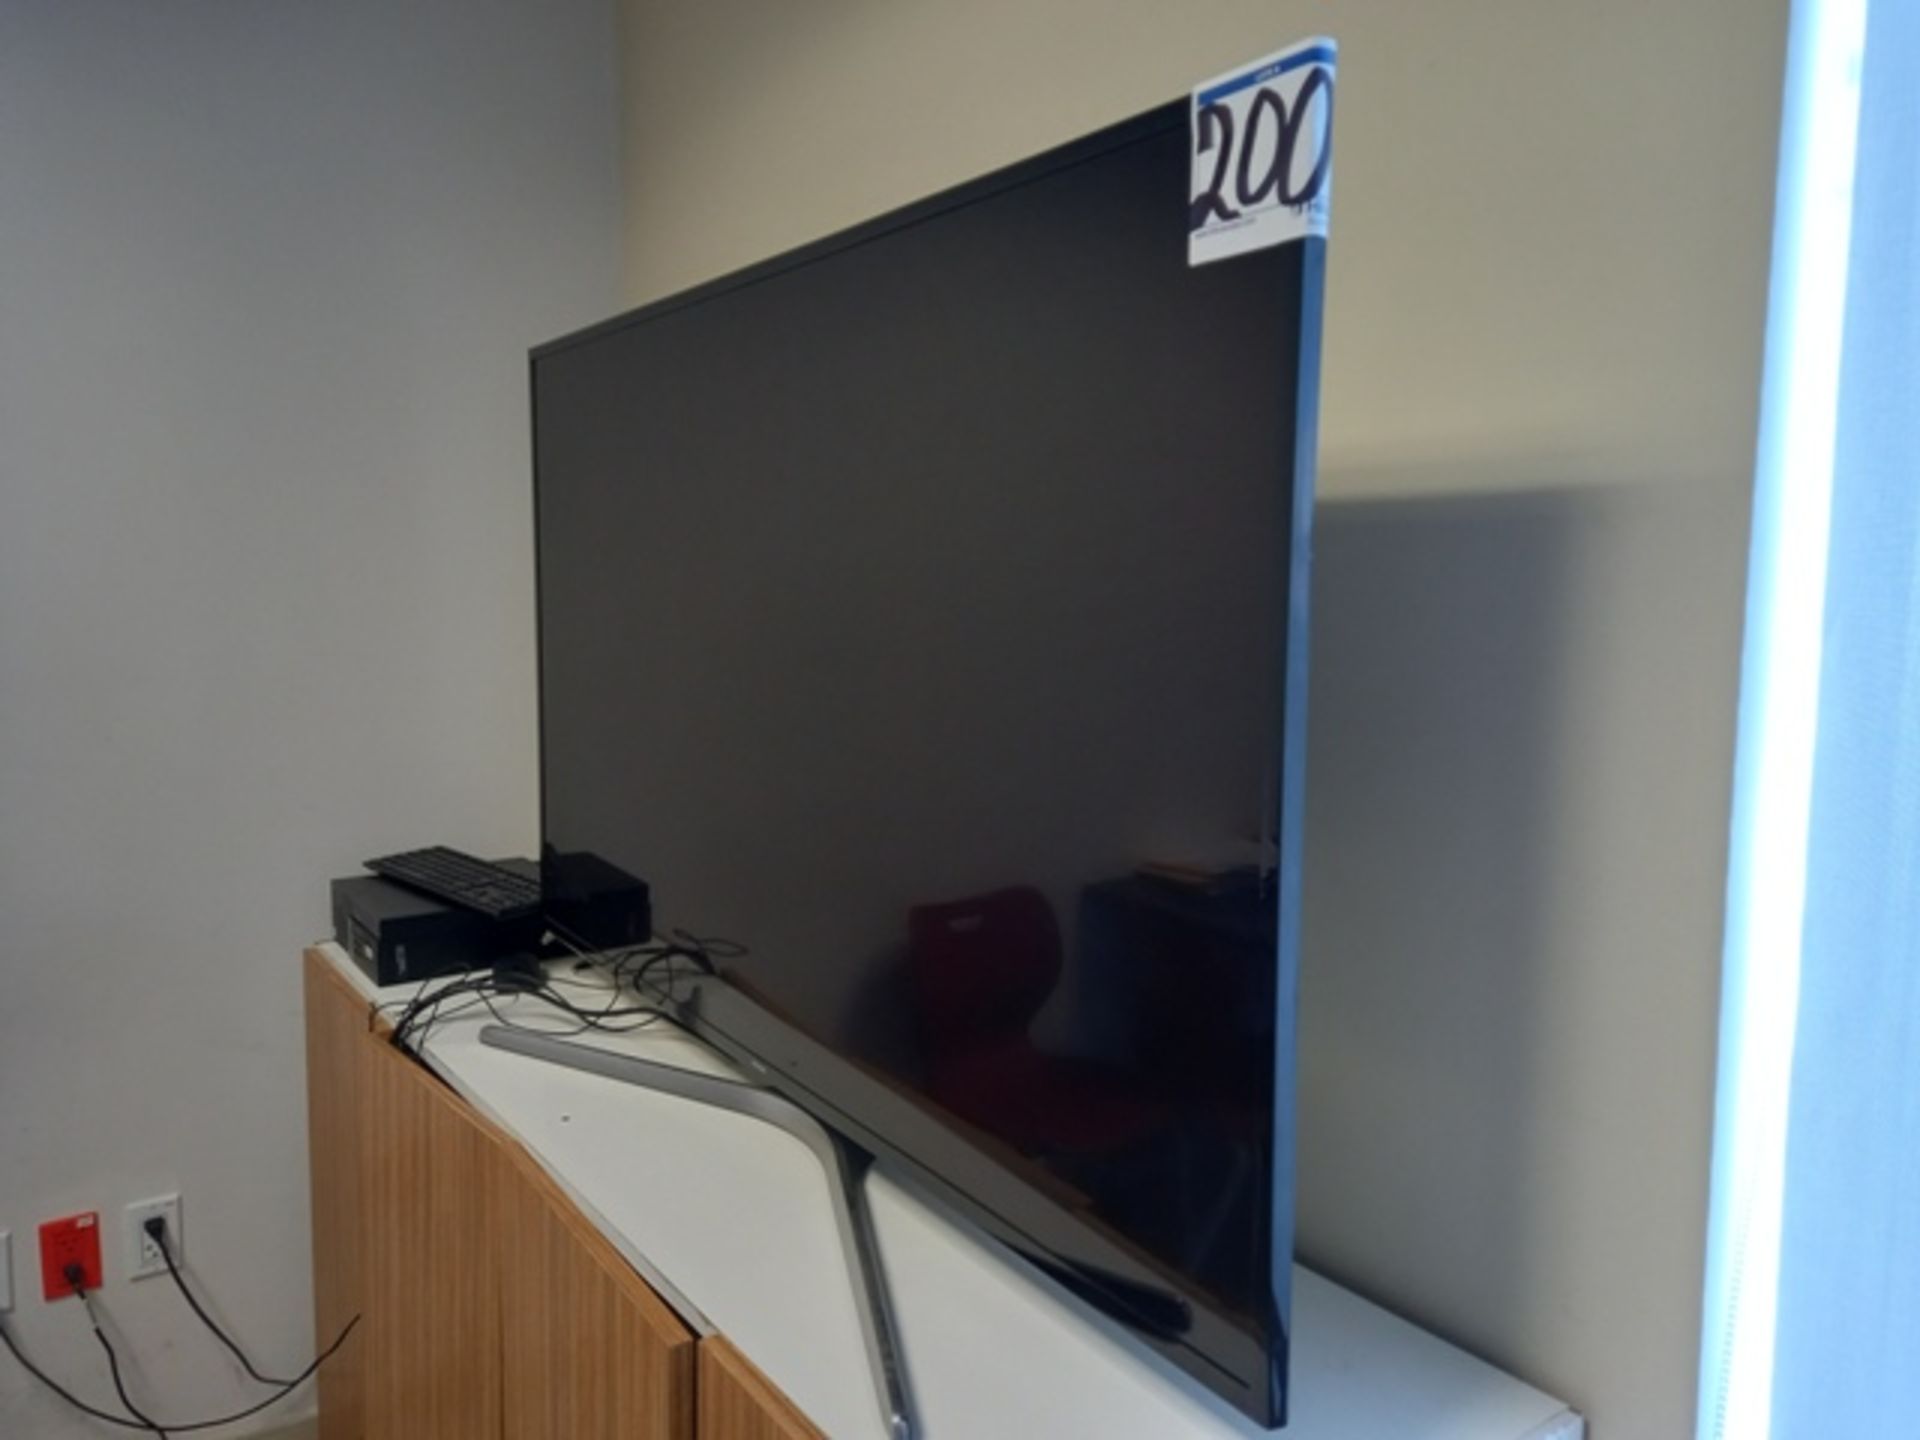 (44) Office Furniture Consisting Of: (1) 60 Inch Samsung TV, (6) L Desks, (6) Simple Desks & more - Image 22 of 25